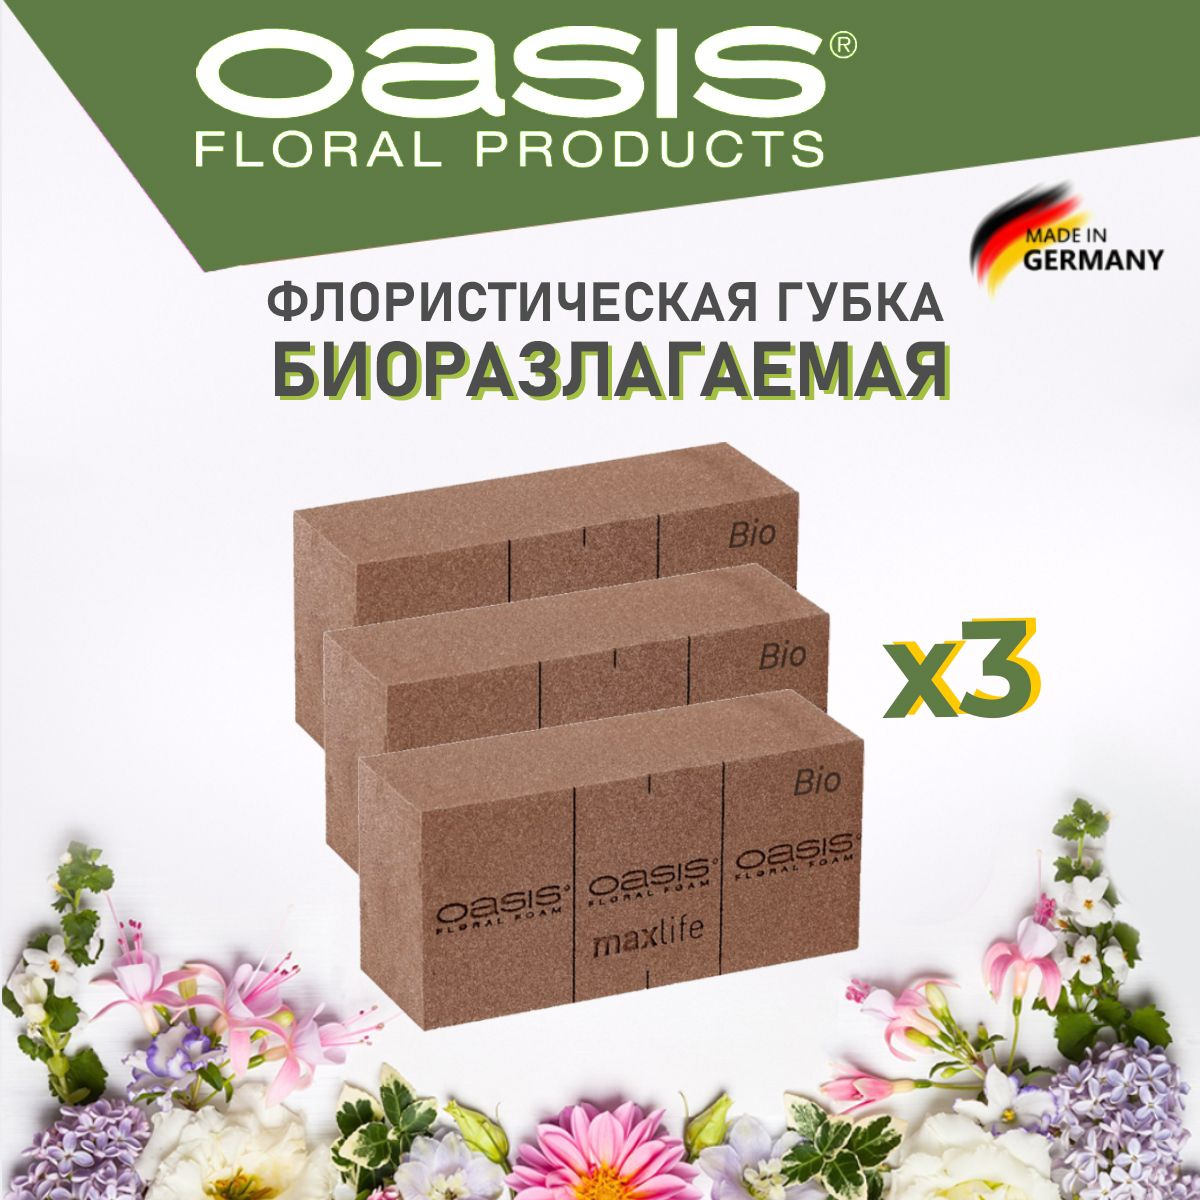 Флористическая губка Оазис Био биоразлагаемая коричневая коробка 3 шт 